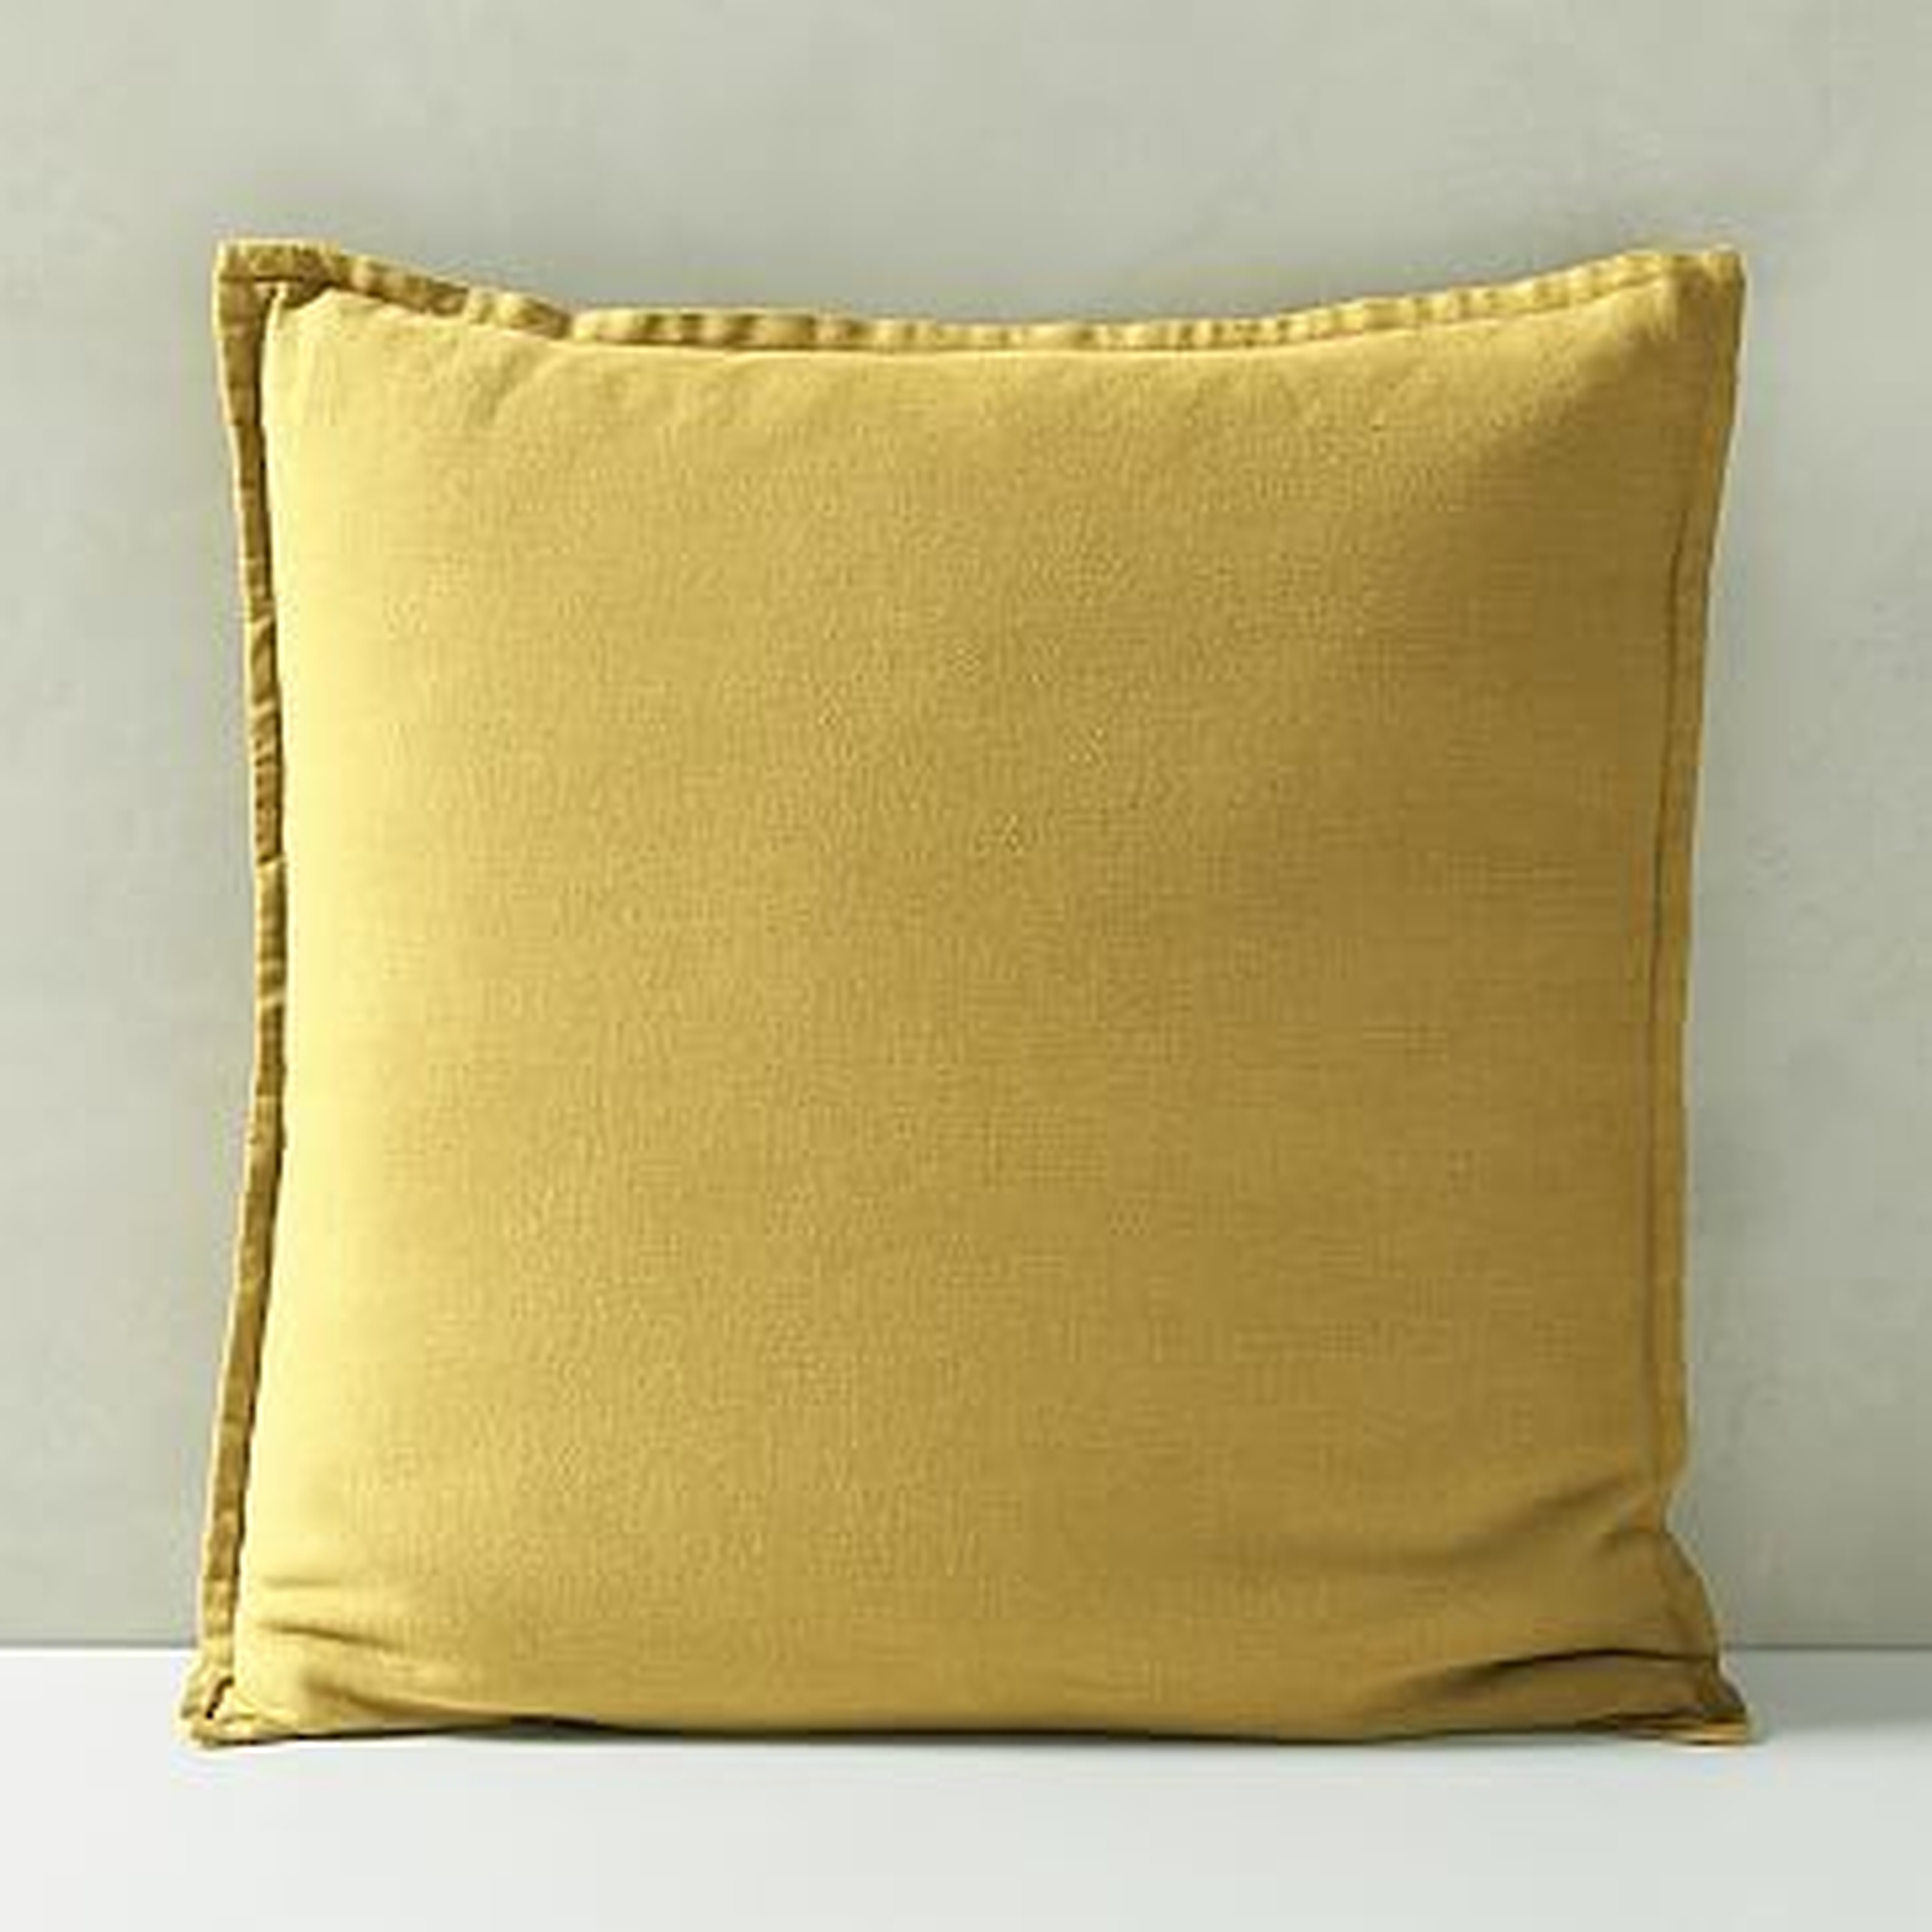 Belgian Flax Linen Pillow Cover, Sand Yellow, 20"x20" - West Elm